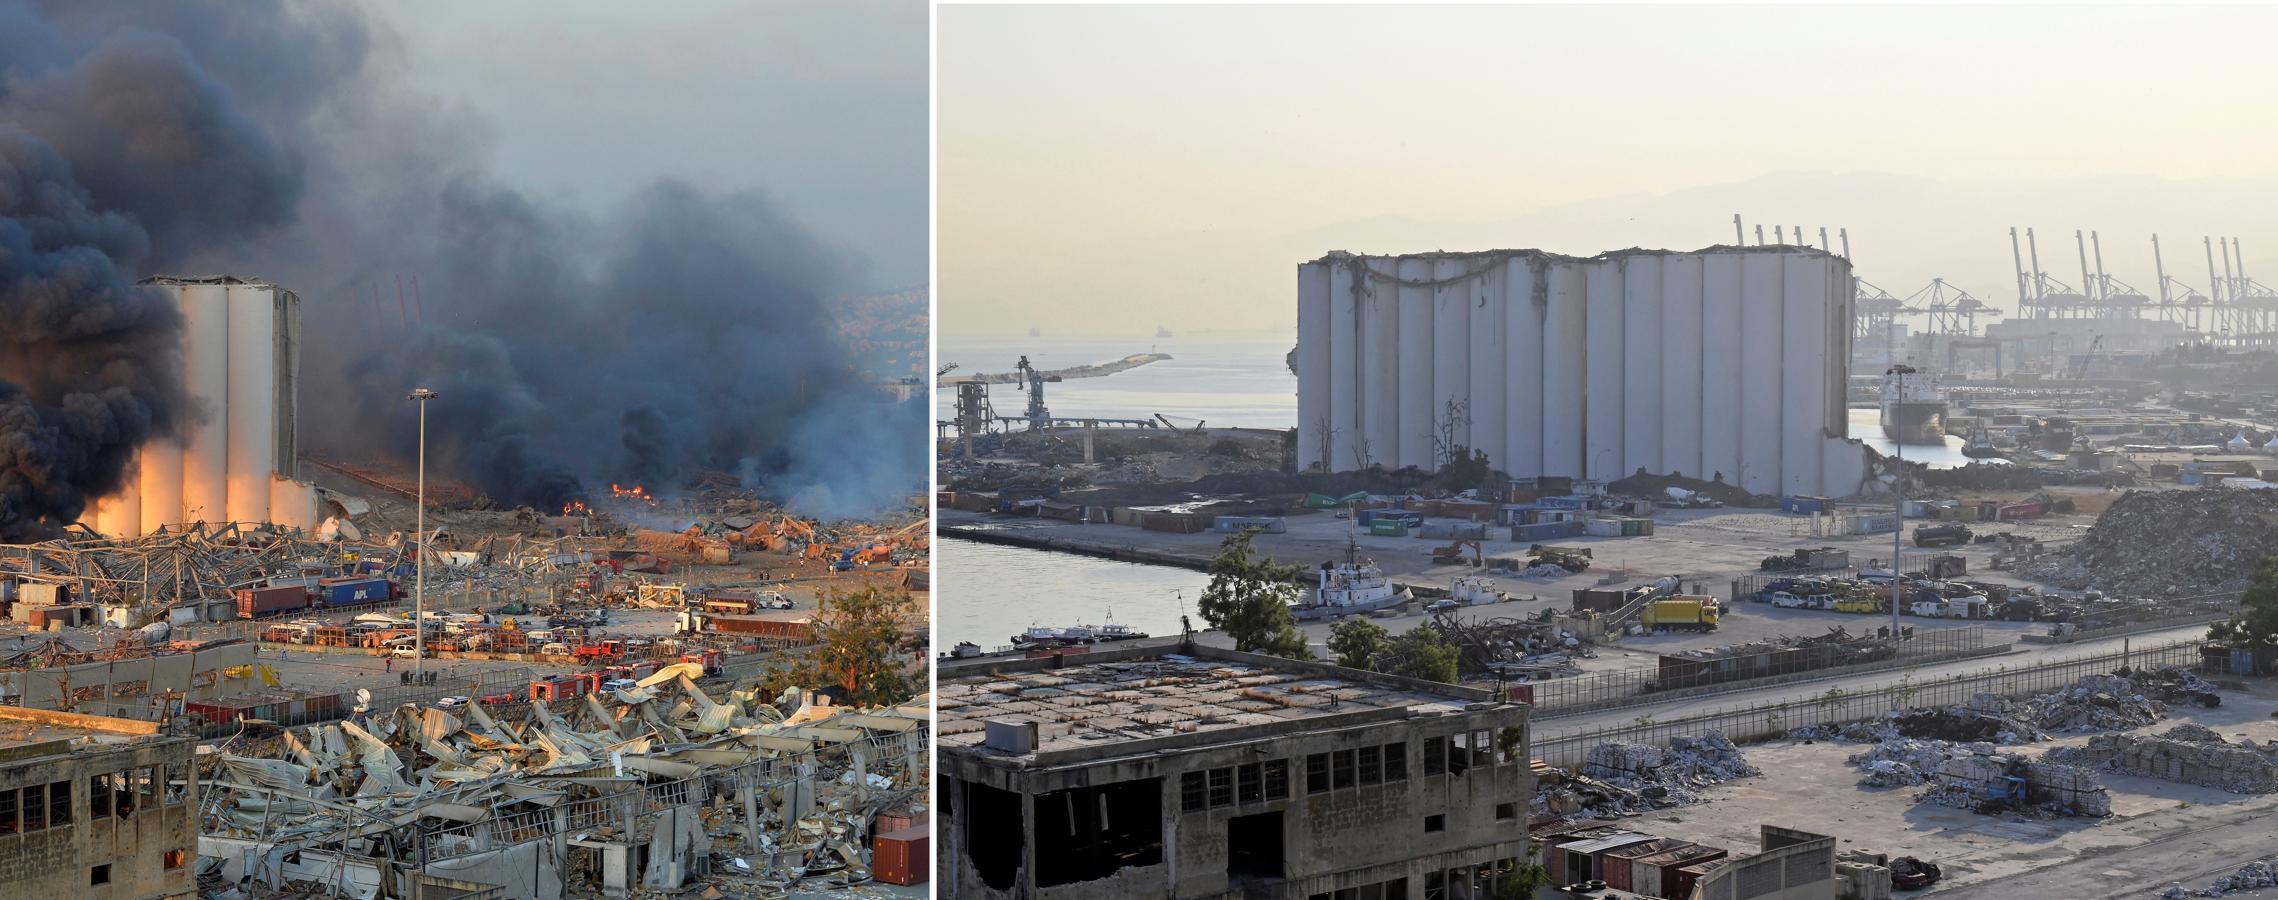 Una explosión masiva el 4 de agosto de 2020 sacudió el puerto de Beirut en el que al menos 200 personas murieron y más de 6.500 resultaron heridas. 